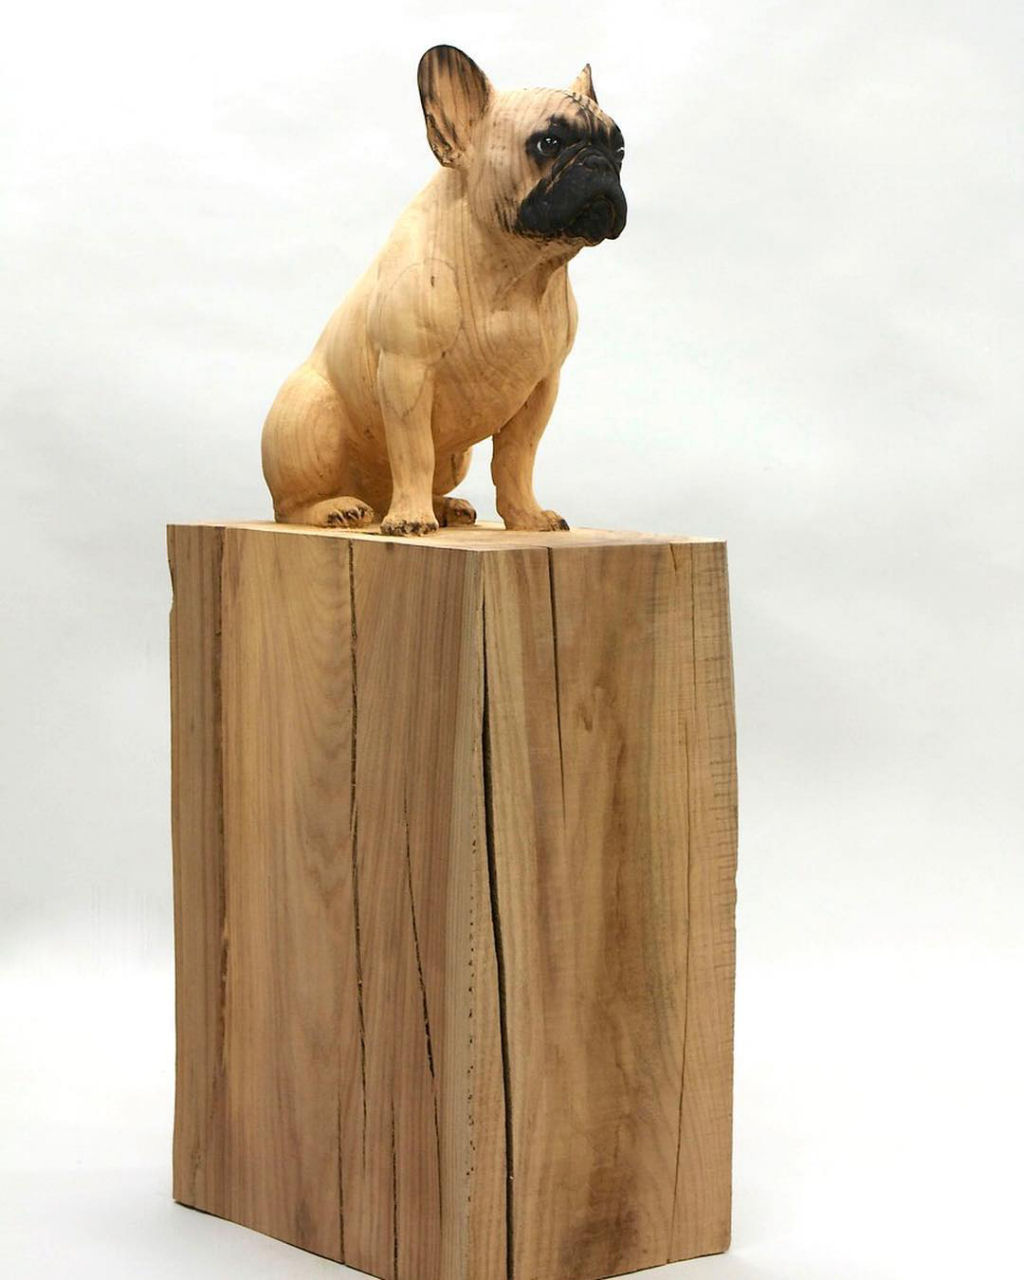 Artista transforma troncos de árvores em esculturas de animais ultrarrealistas 02